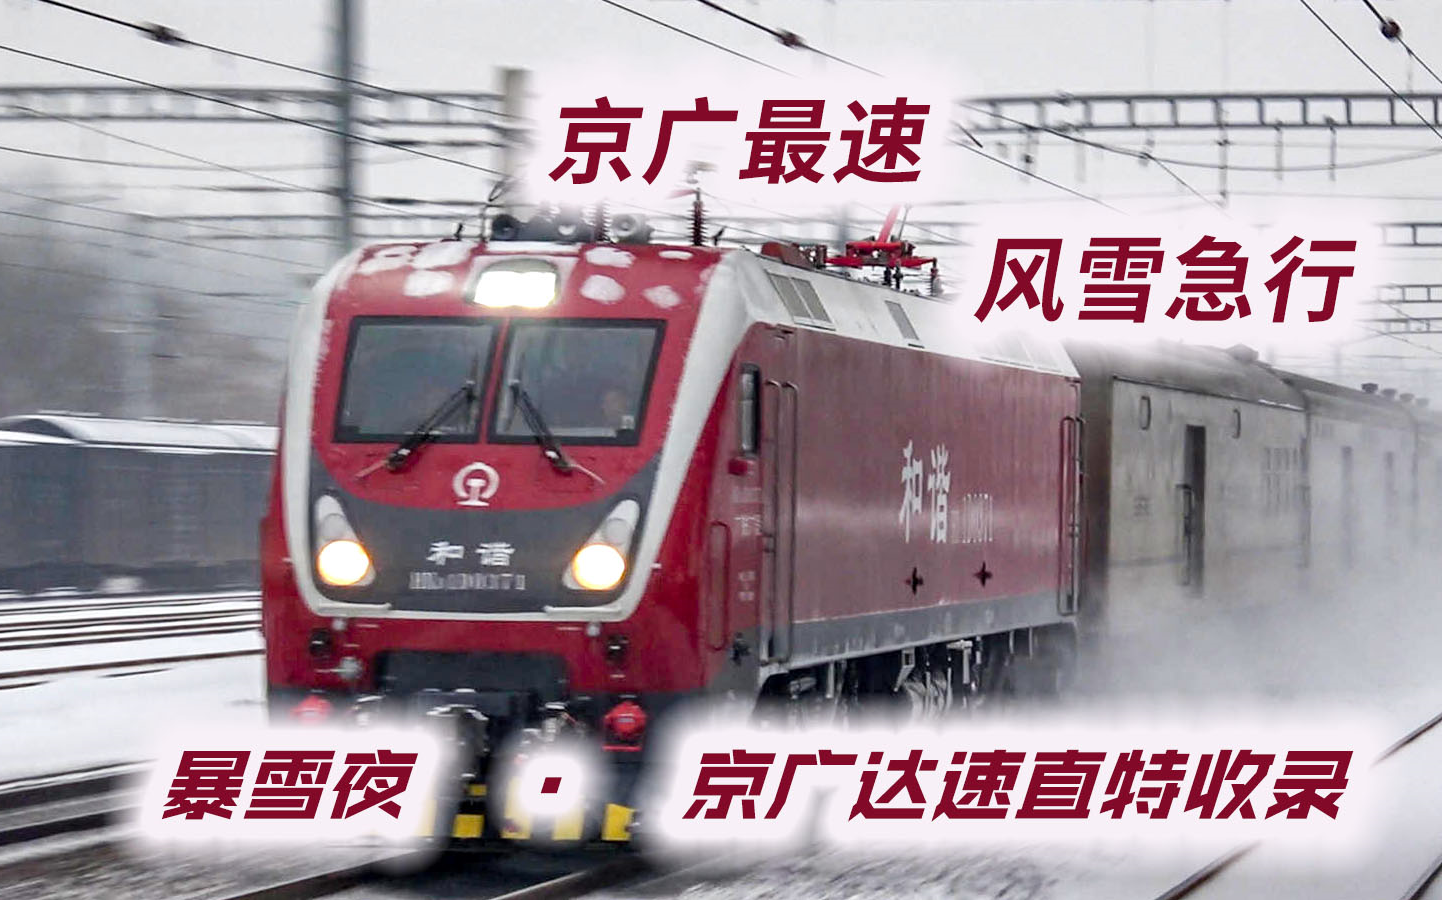 达速运行！暴雪夜，收录京广铁路直达特快列车达速通过，感受风雪扑面而来的冲击感。